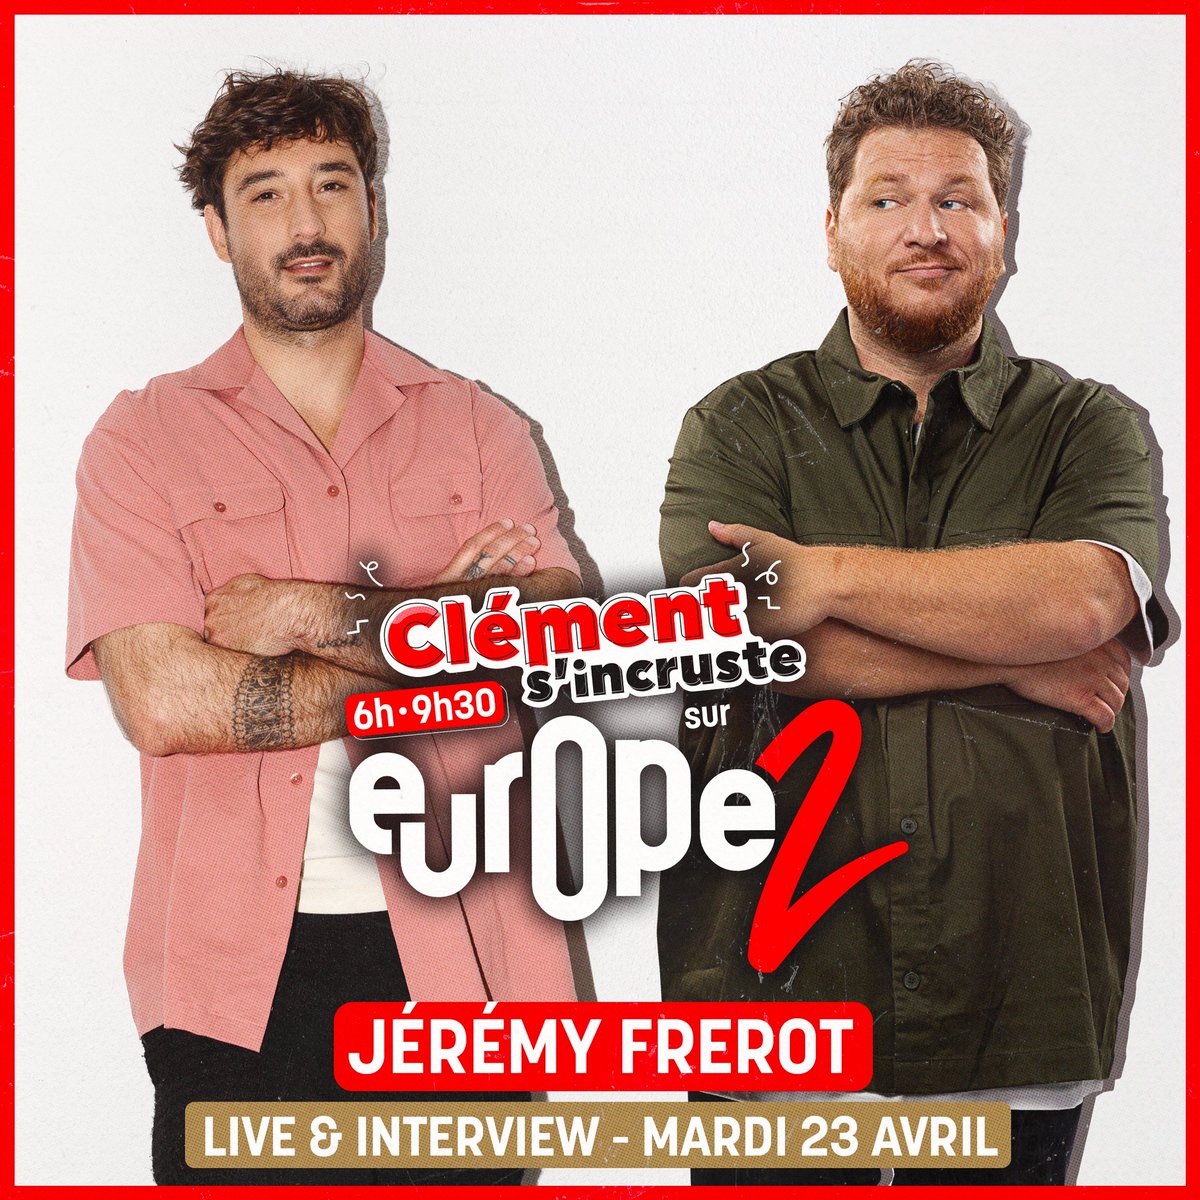 . @JeremyFrerot sera avec nous DEMAIN en direct chez @ClemSurEurope2 ! 🥳😍 On a hâte 🔥